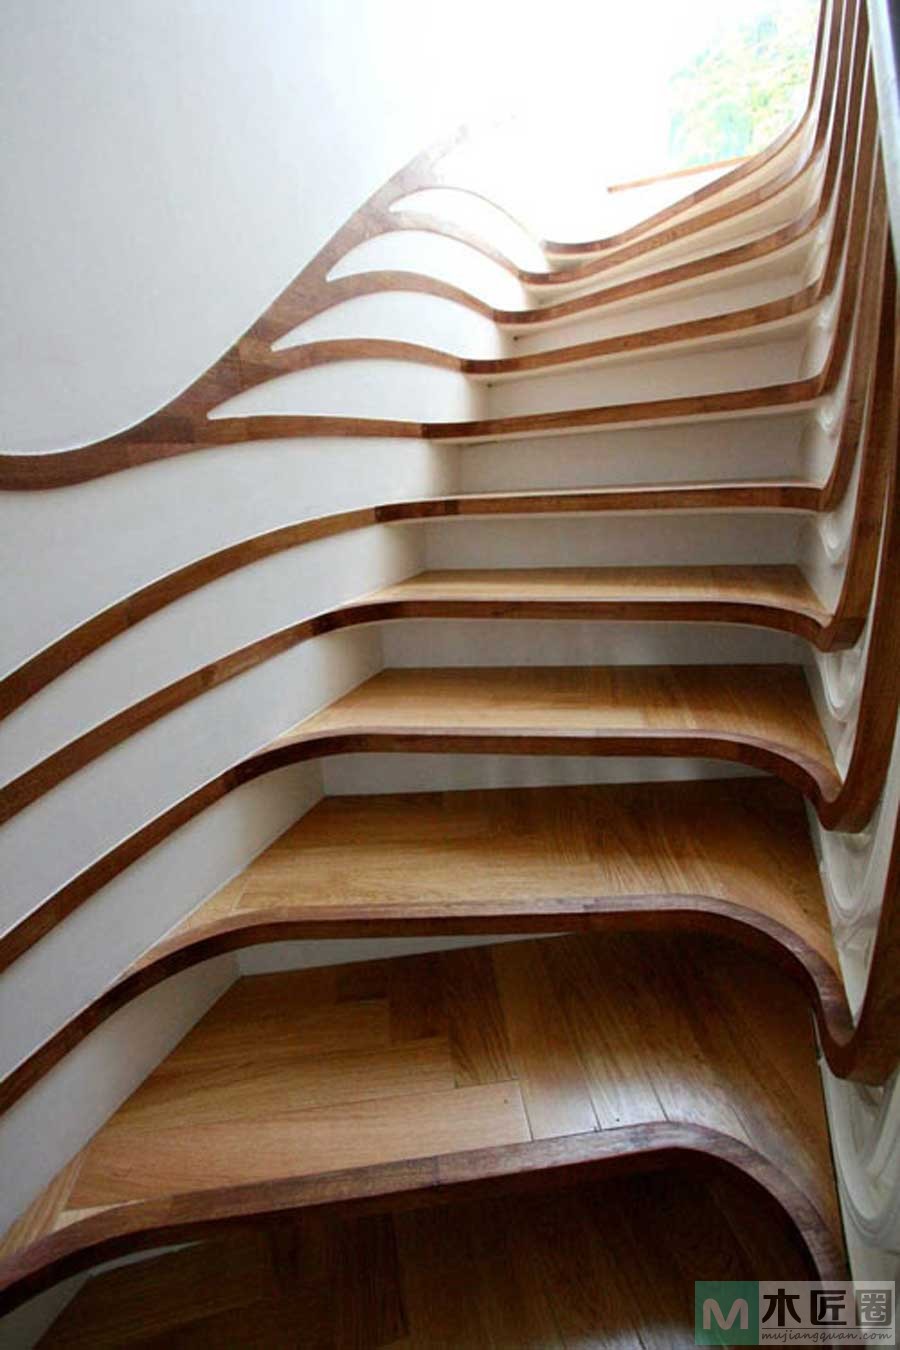 令人叫绝的扭曲楼梯设计，是在装修中非常有创意的设计